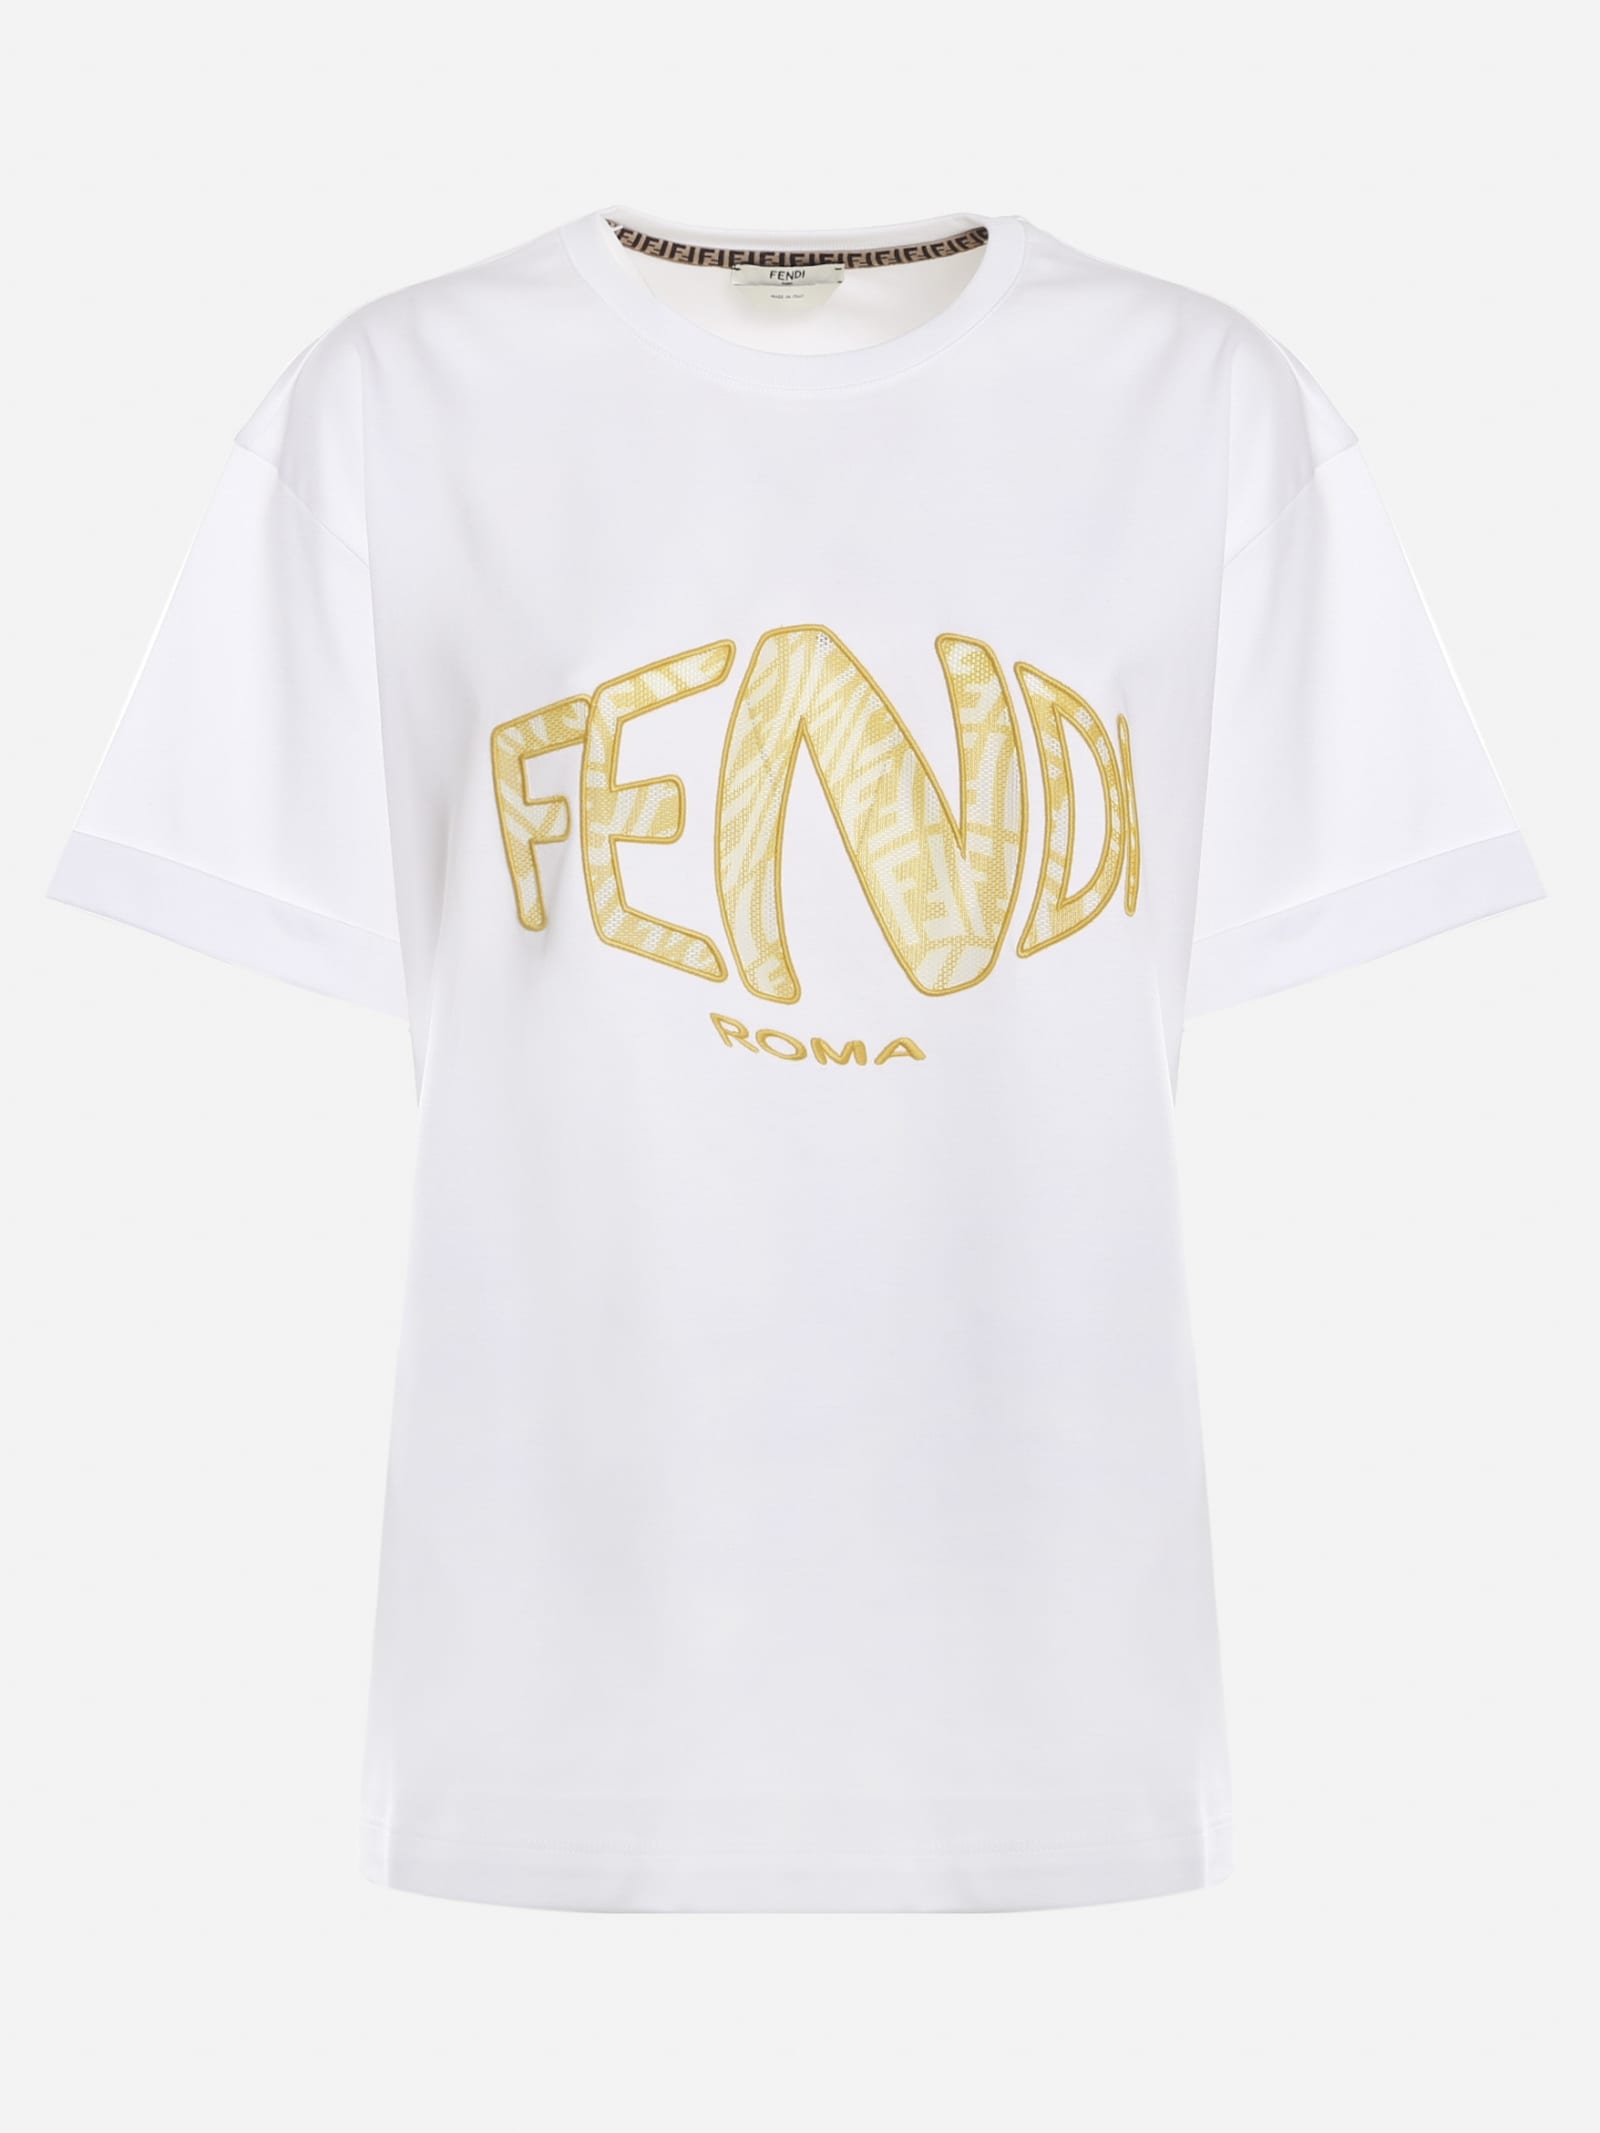 Fendi Cotton T-shirt With Fendi Vertigo Logo Letteing